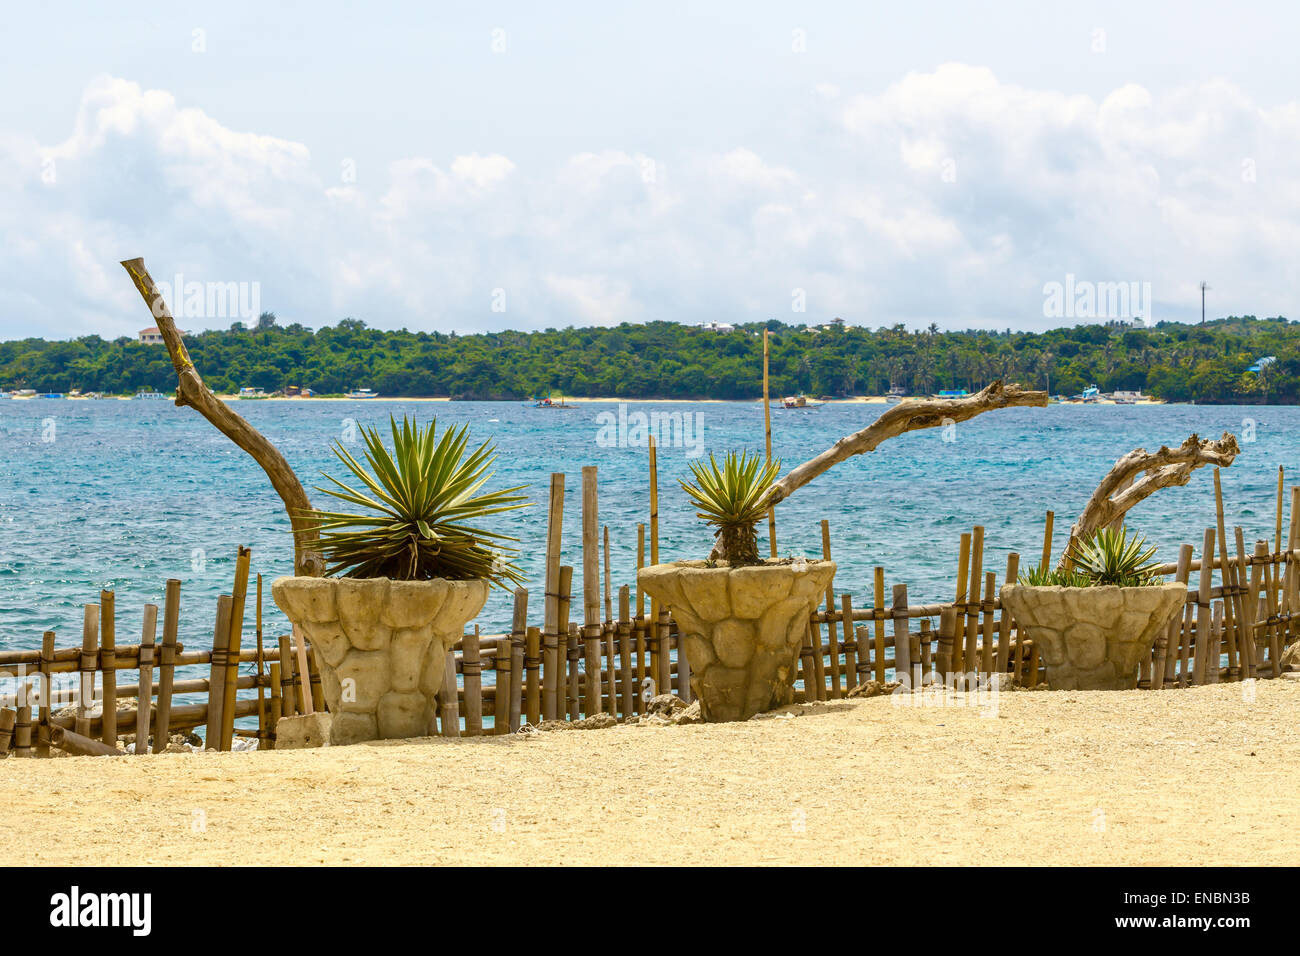 Grüne Pflanzen mit Aloe Vera und Palmen und blaues Meer, Philippinen Boracay island Stockfoto